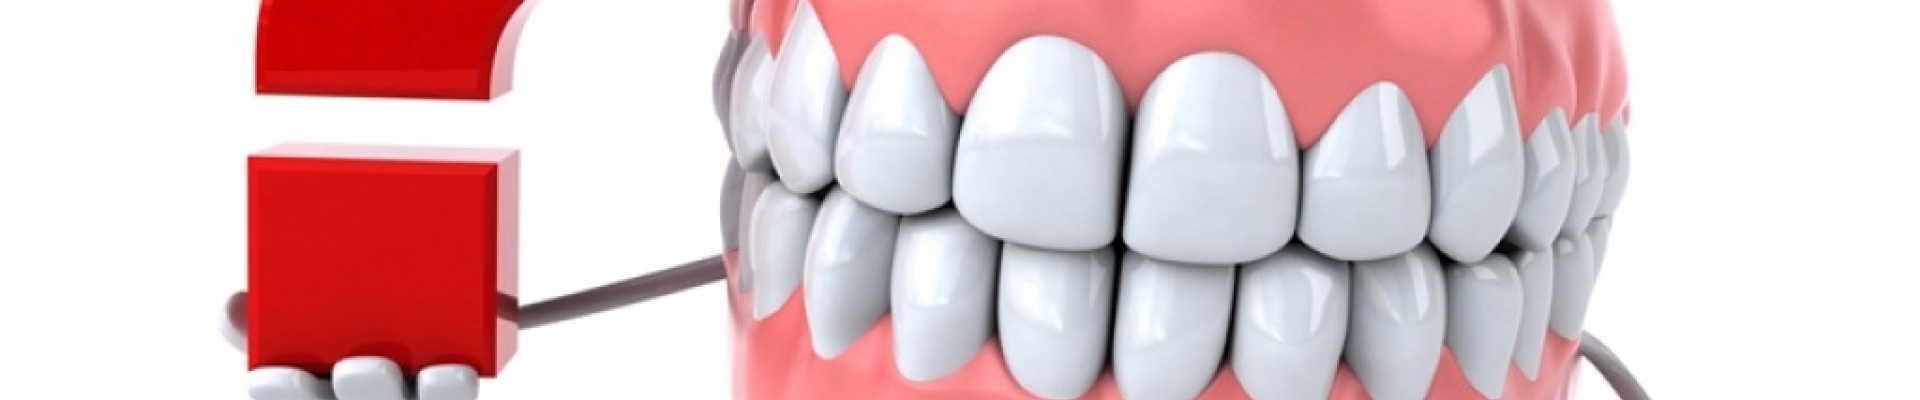 Топ-5 удивительных фактов о зубах